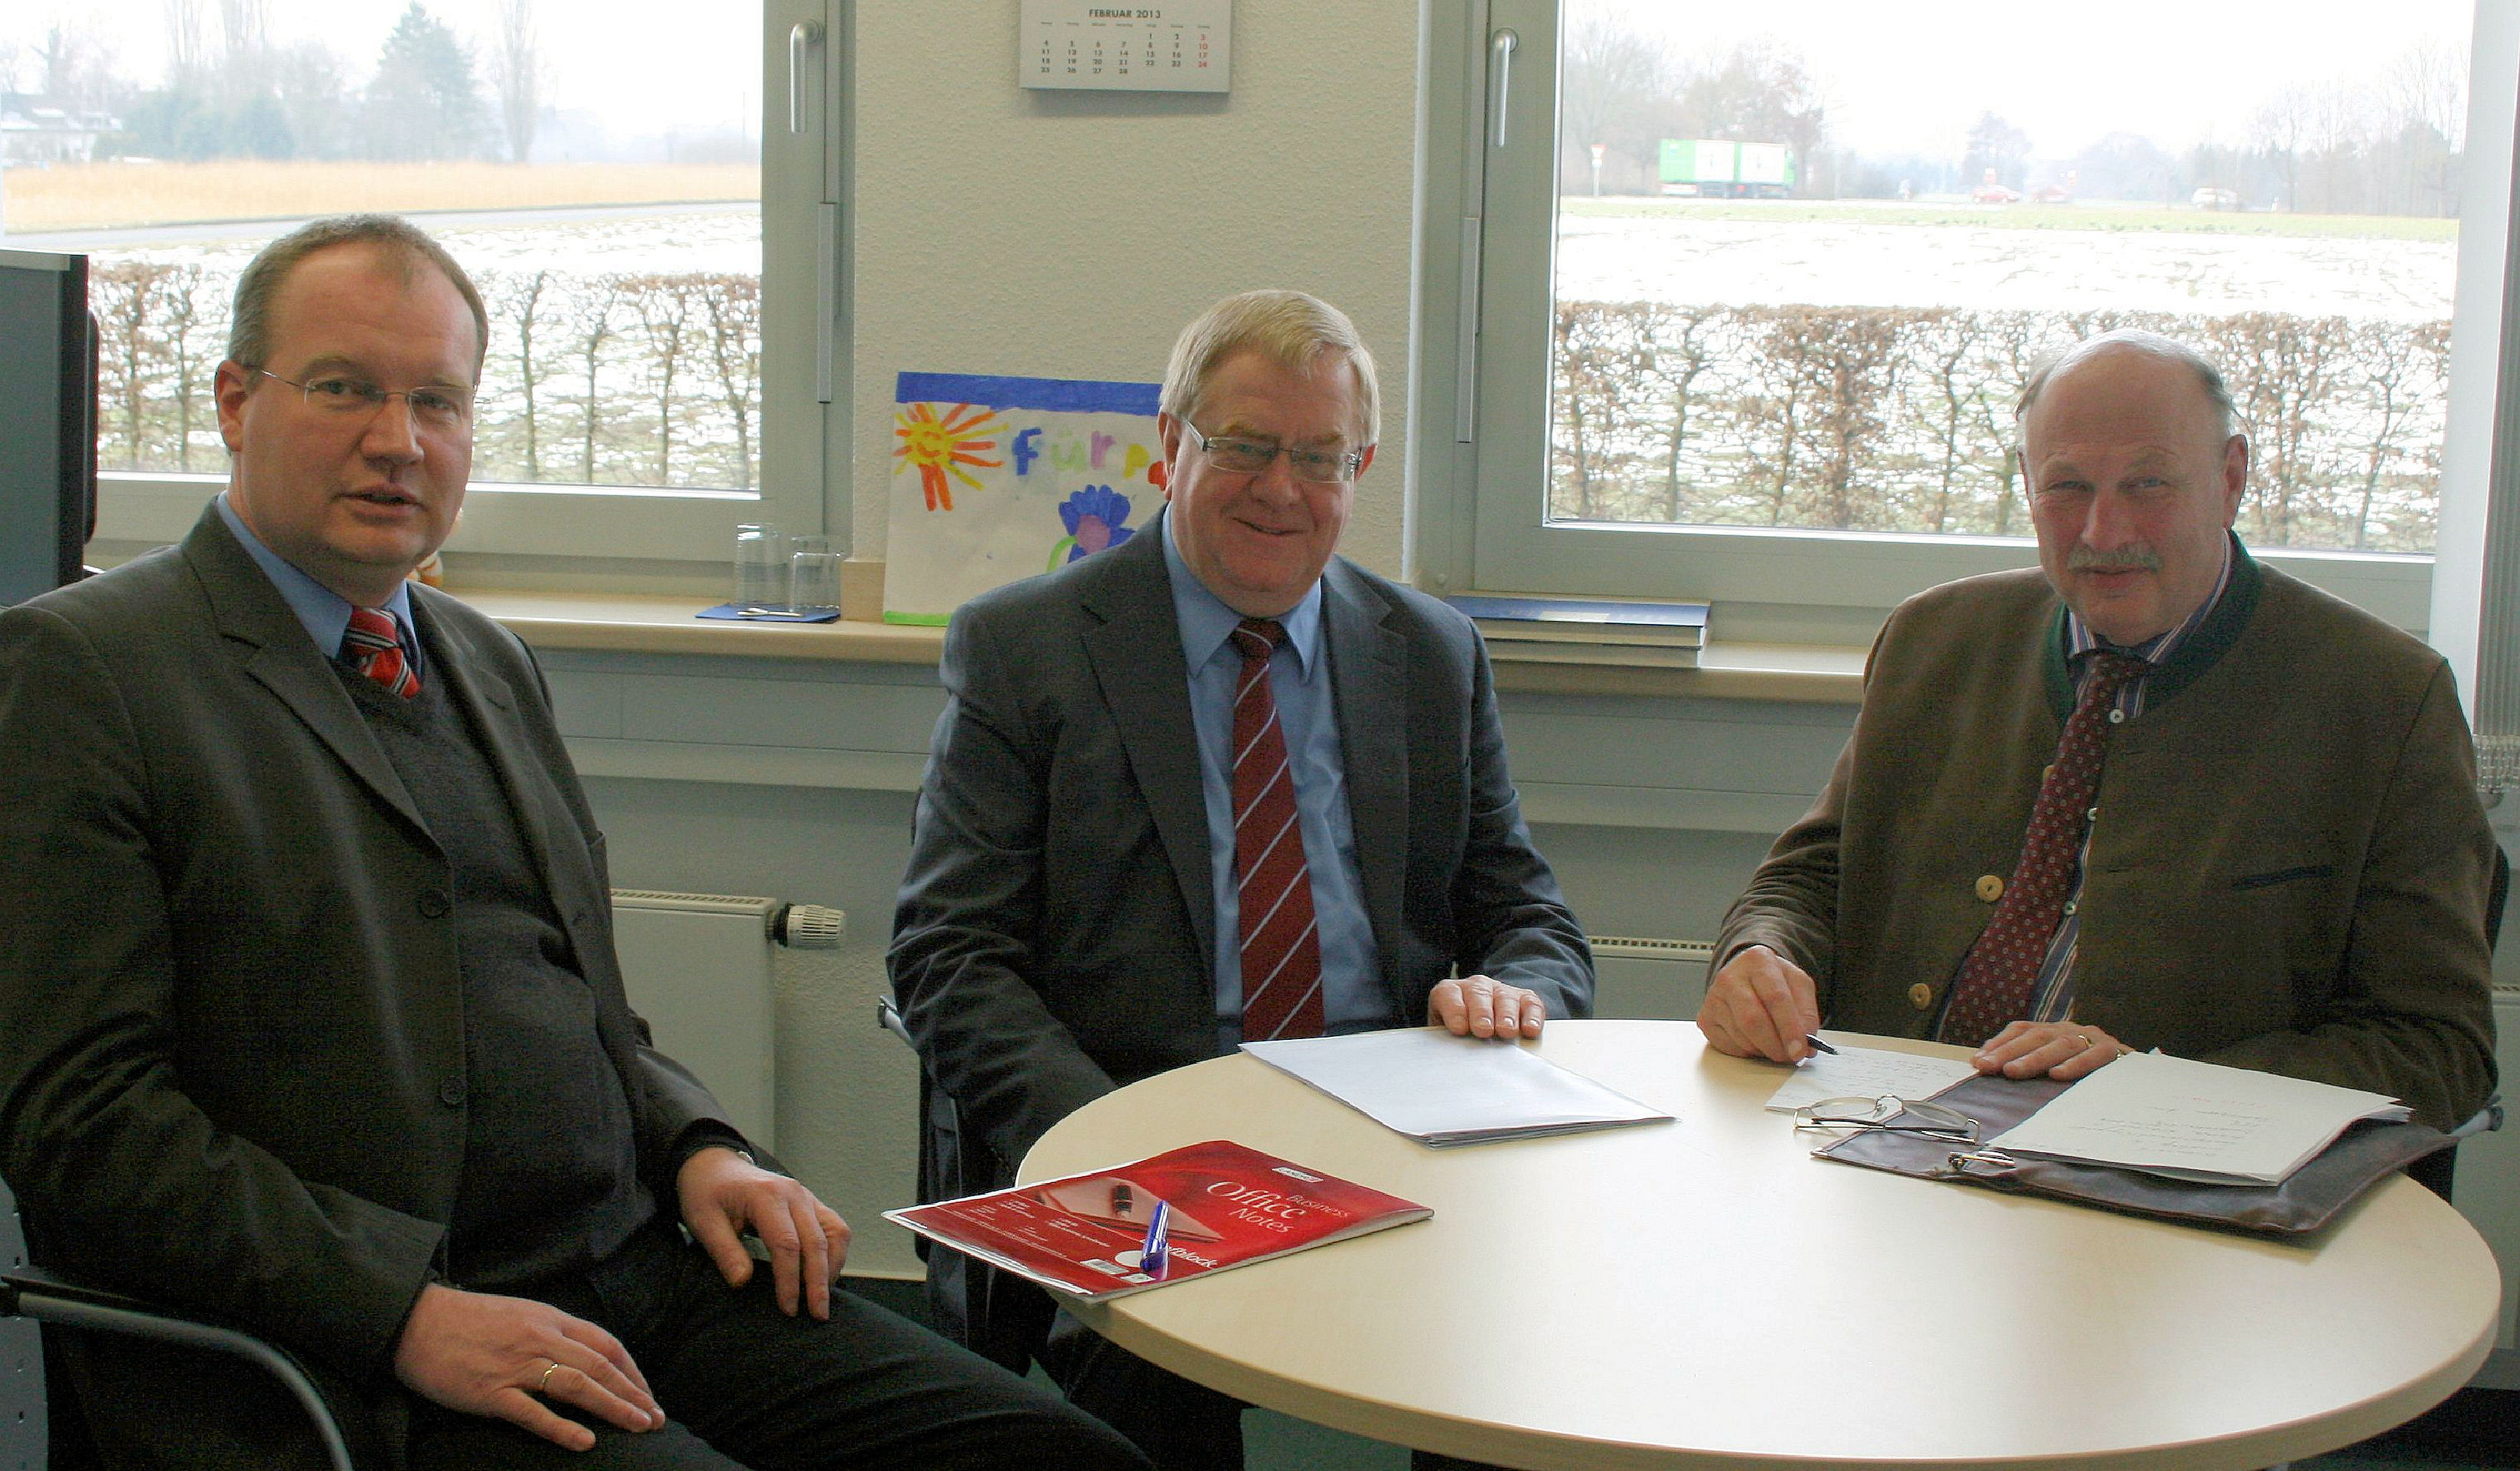 Reinhold Sendker (m.) im Gesprch mit Dr. Matthias Quas (l.) und dem Vorsitzenden Graf von Spee